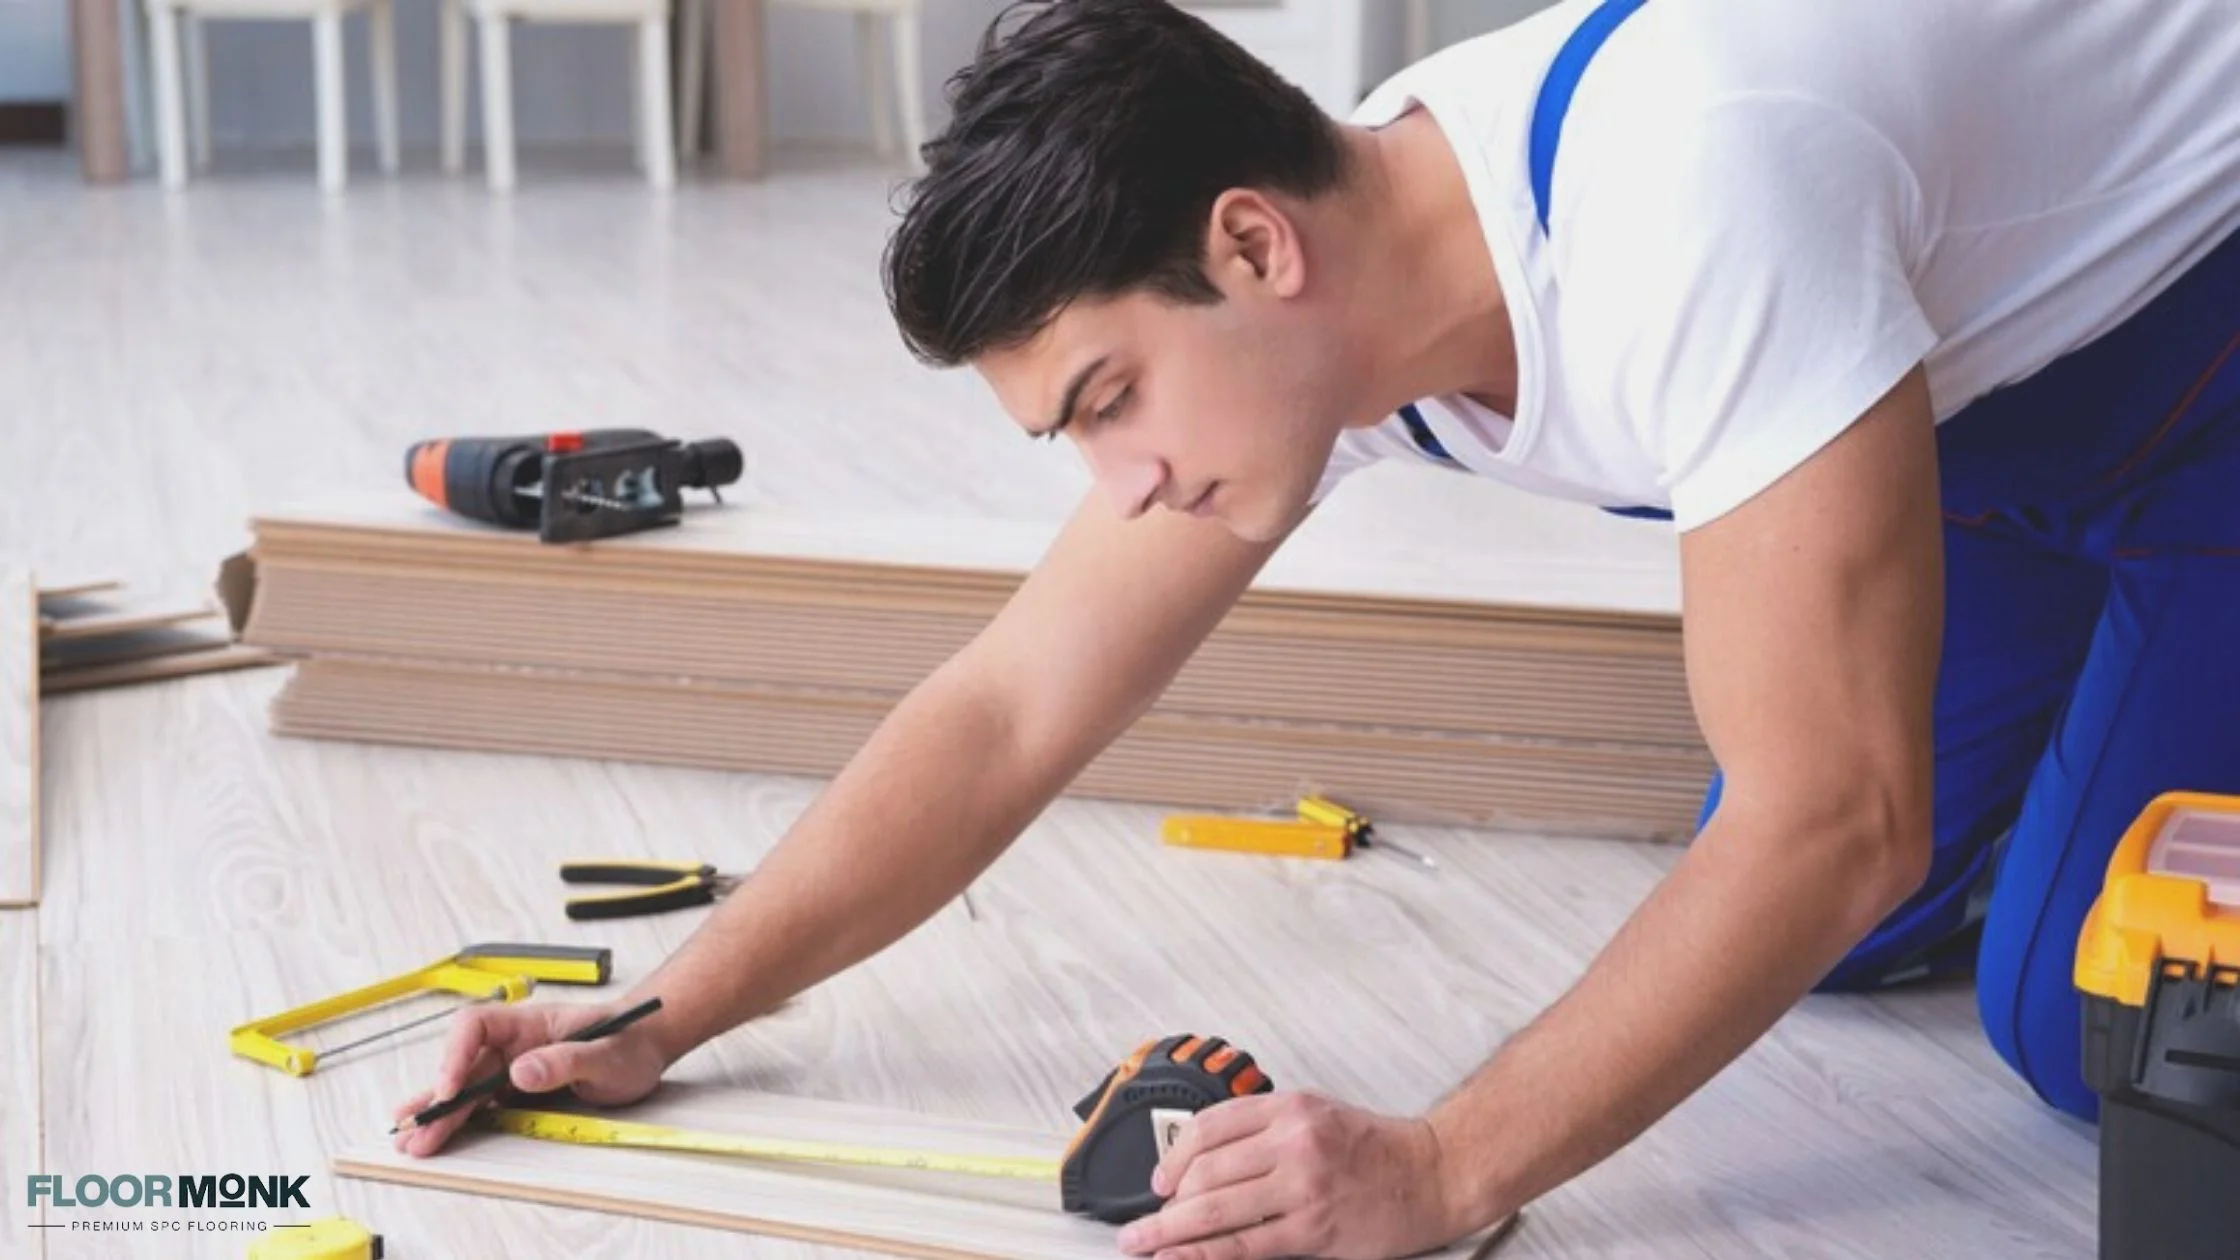 Cost-effectiveness of SPC Flooring